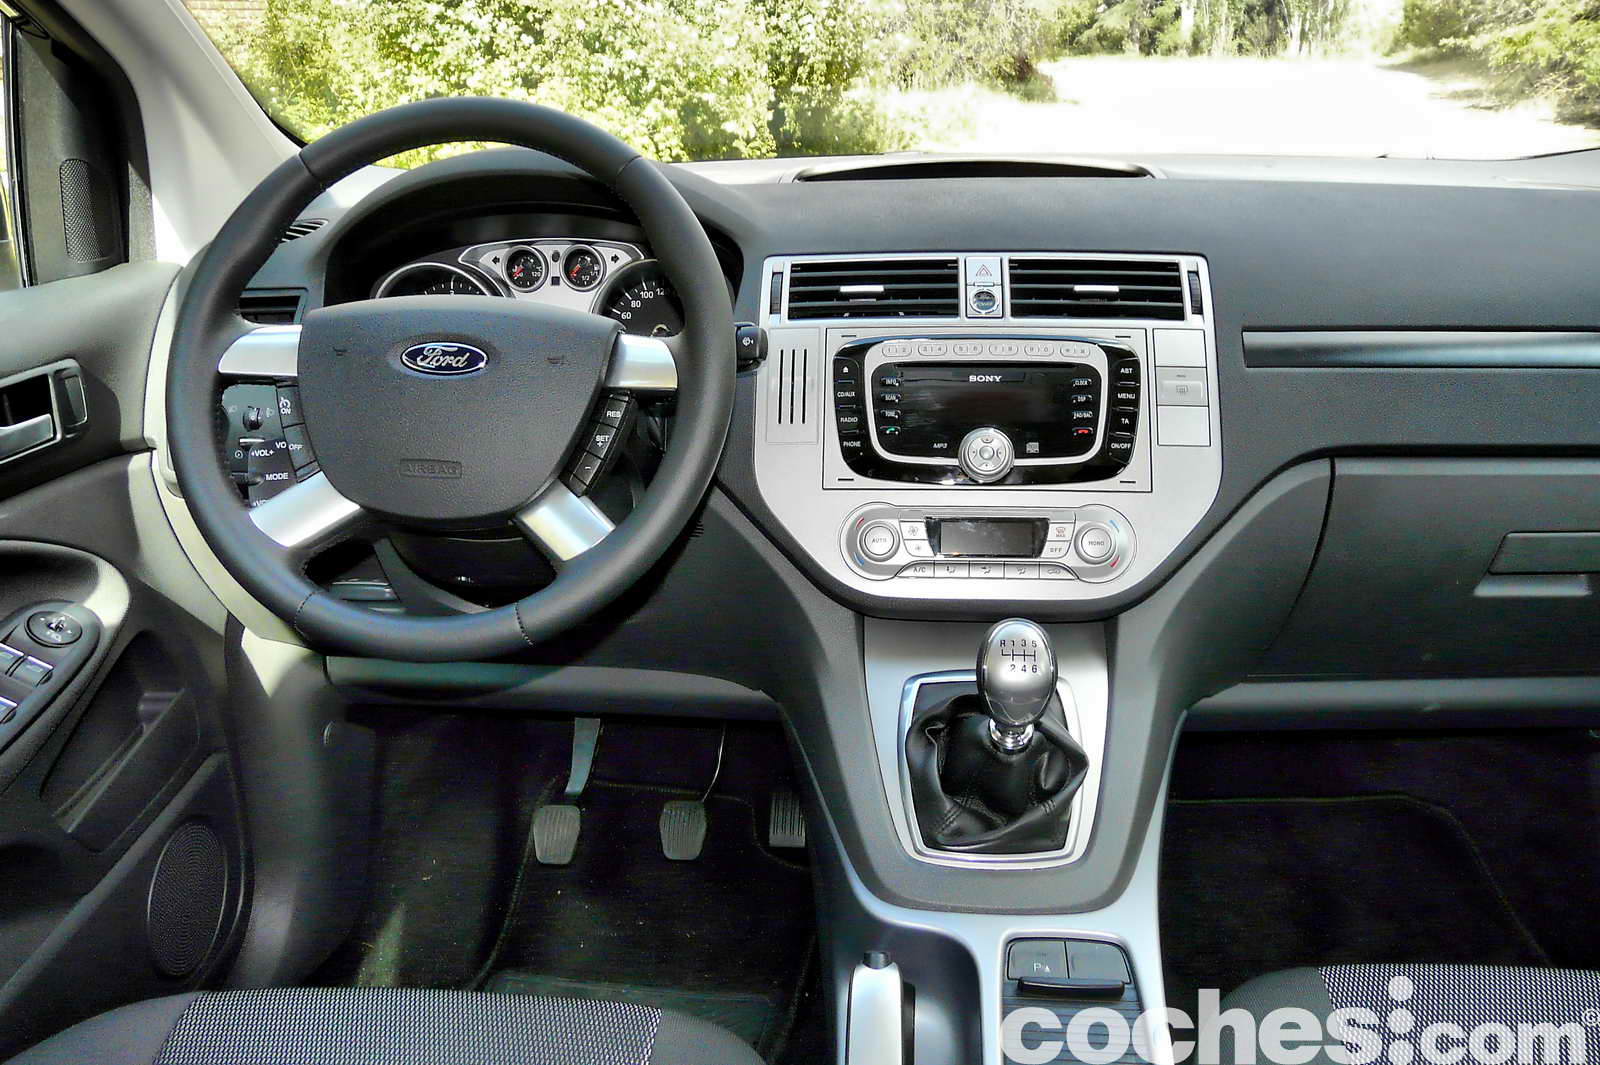 2011 Ford kuga interior #2